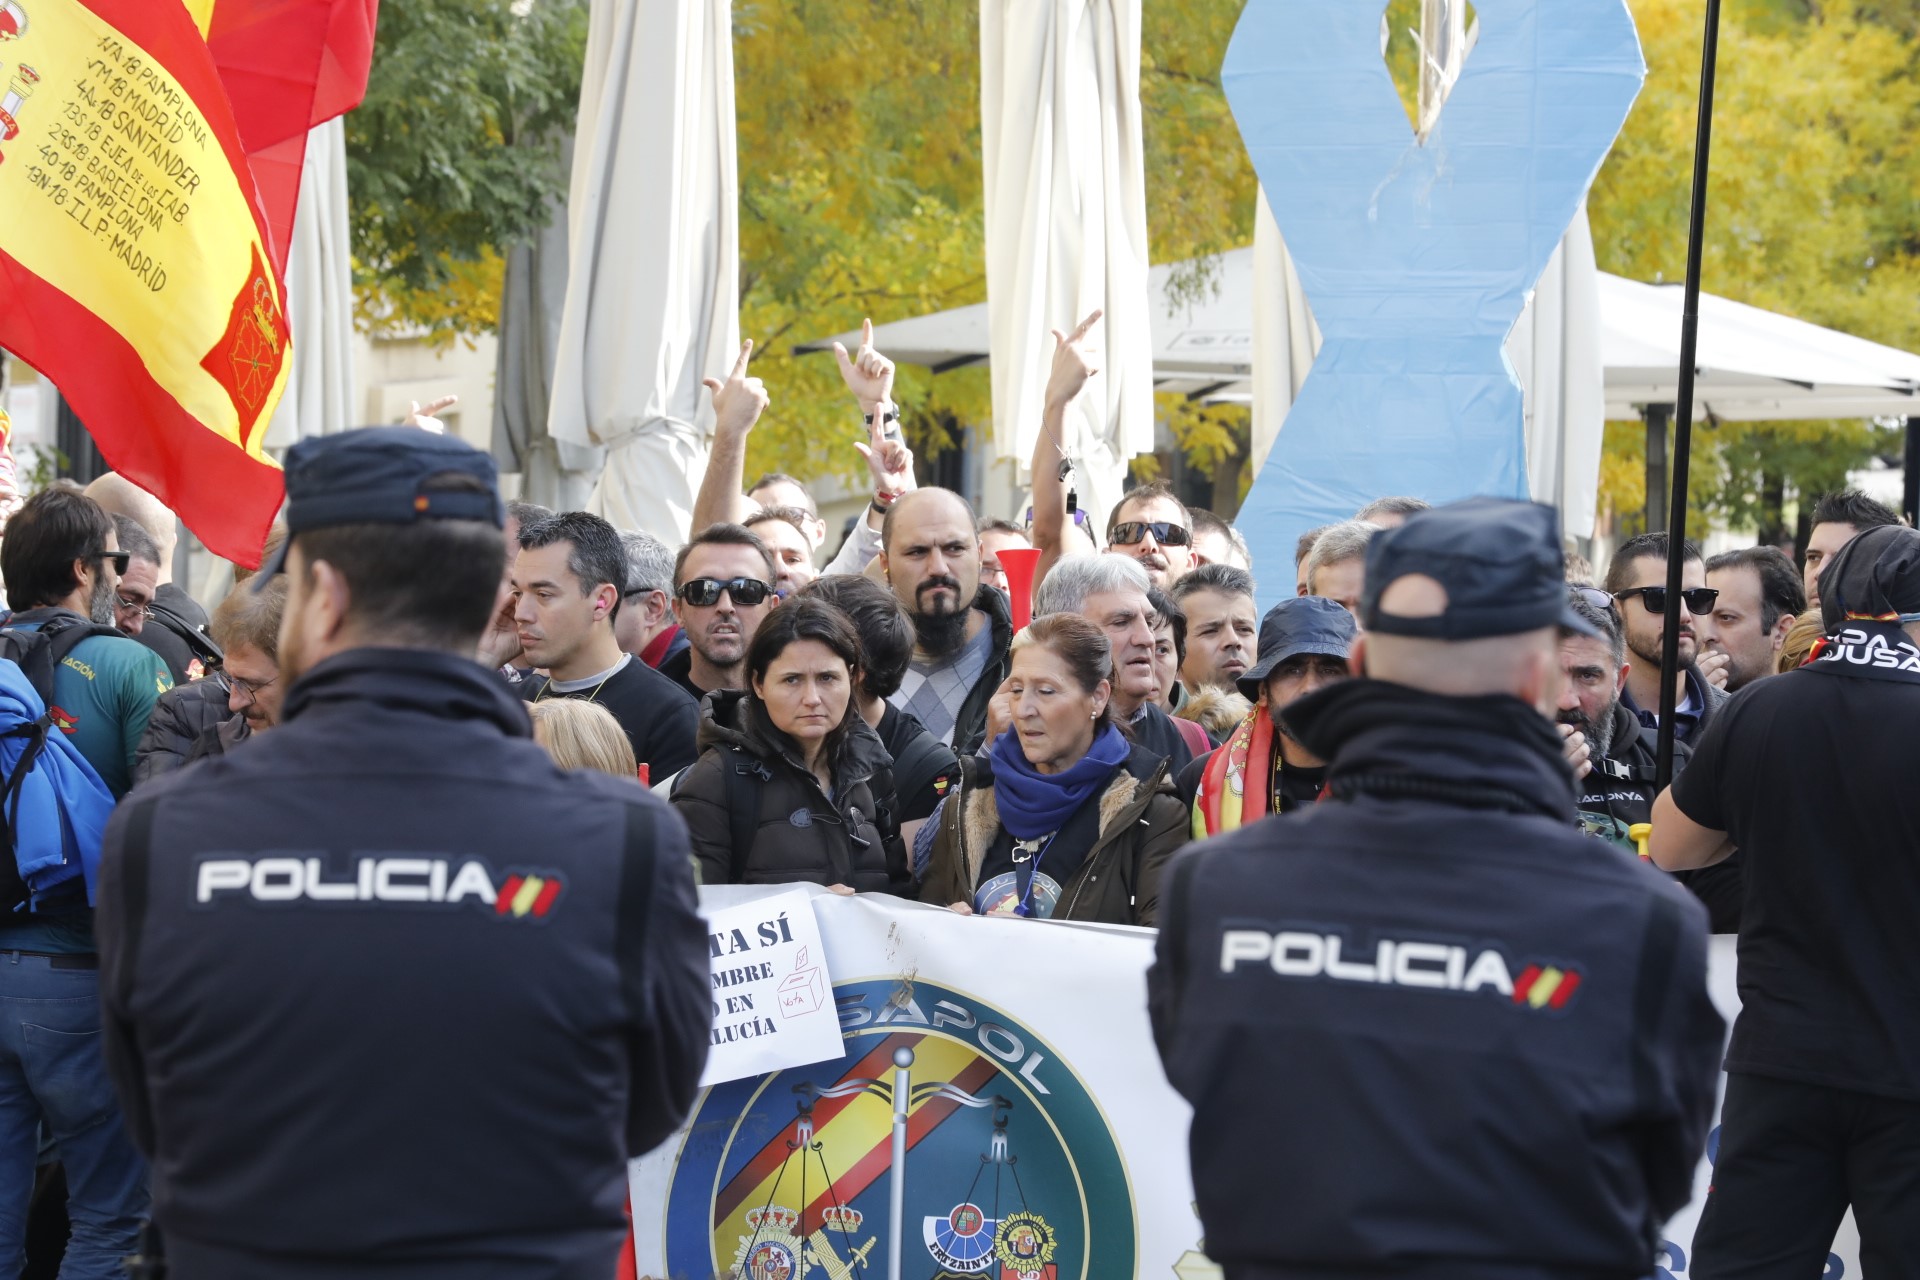 Policía Nacional en una manifestación. Foto: EP